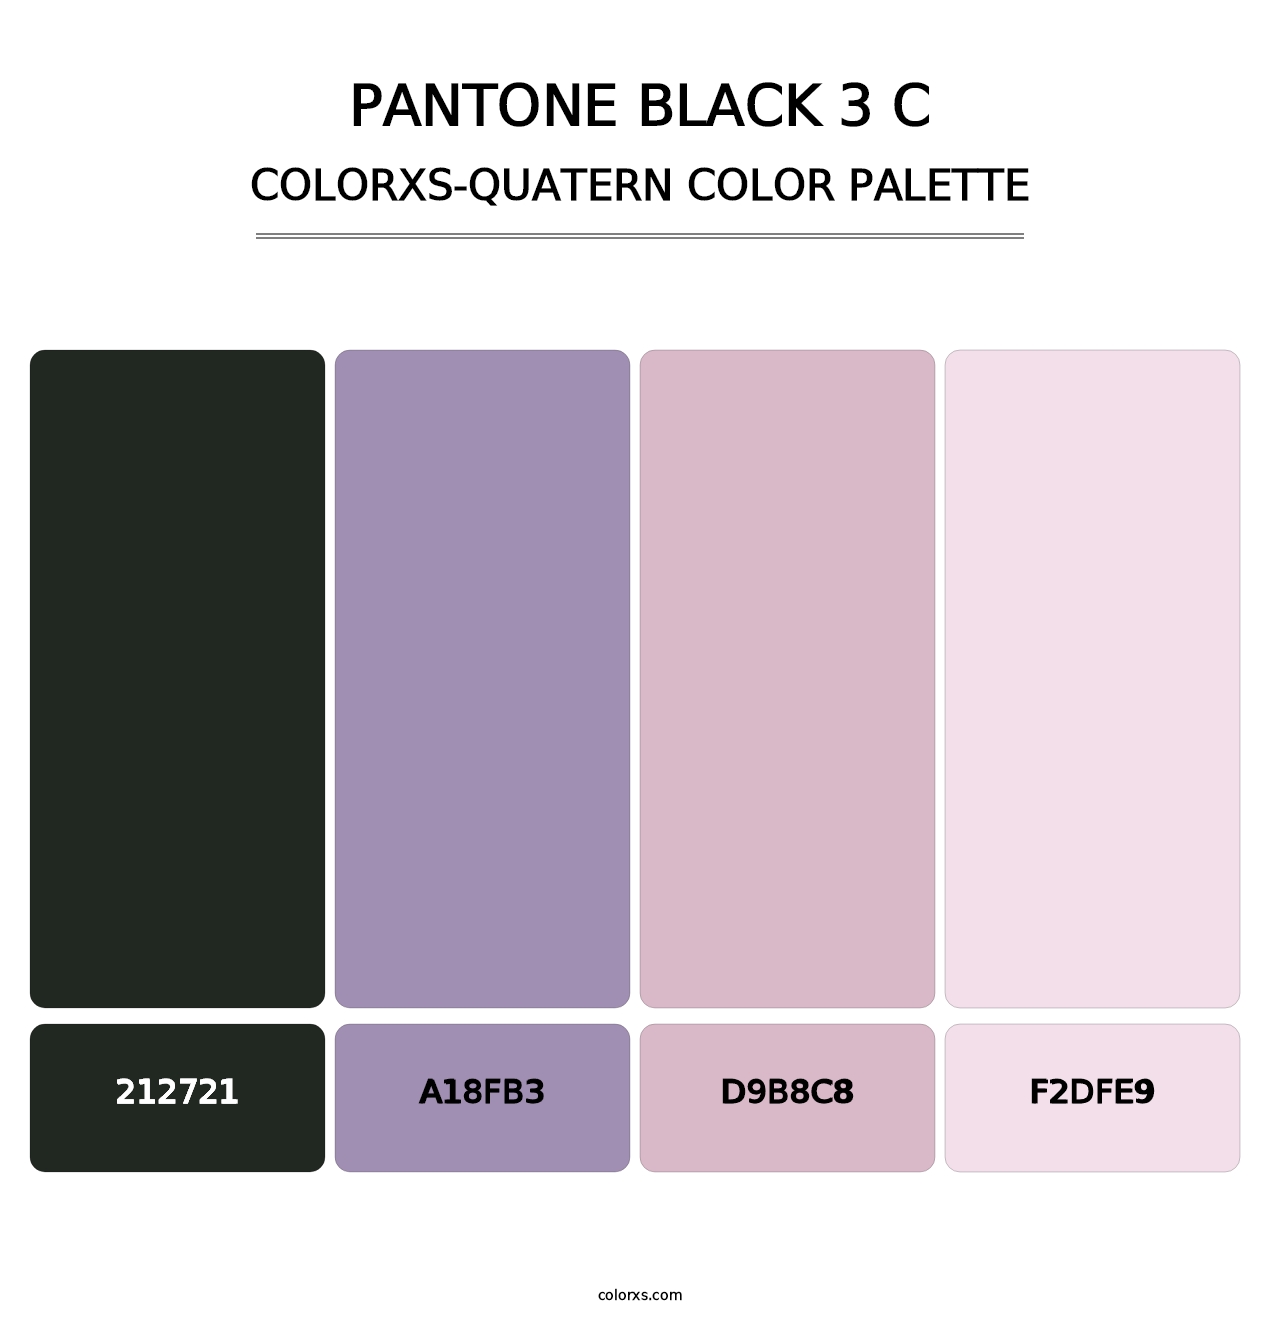 PANTONE Black 3 C - Colorxs Quatern Palette